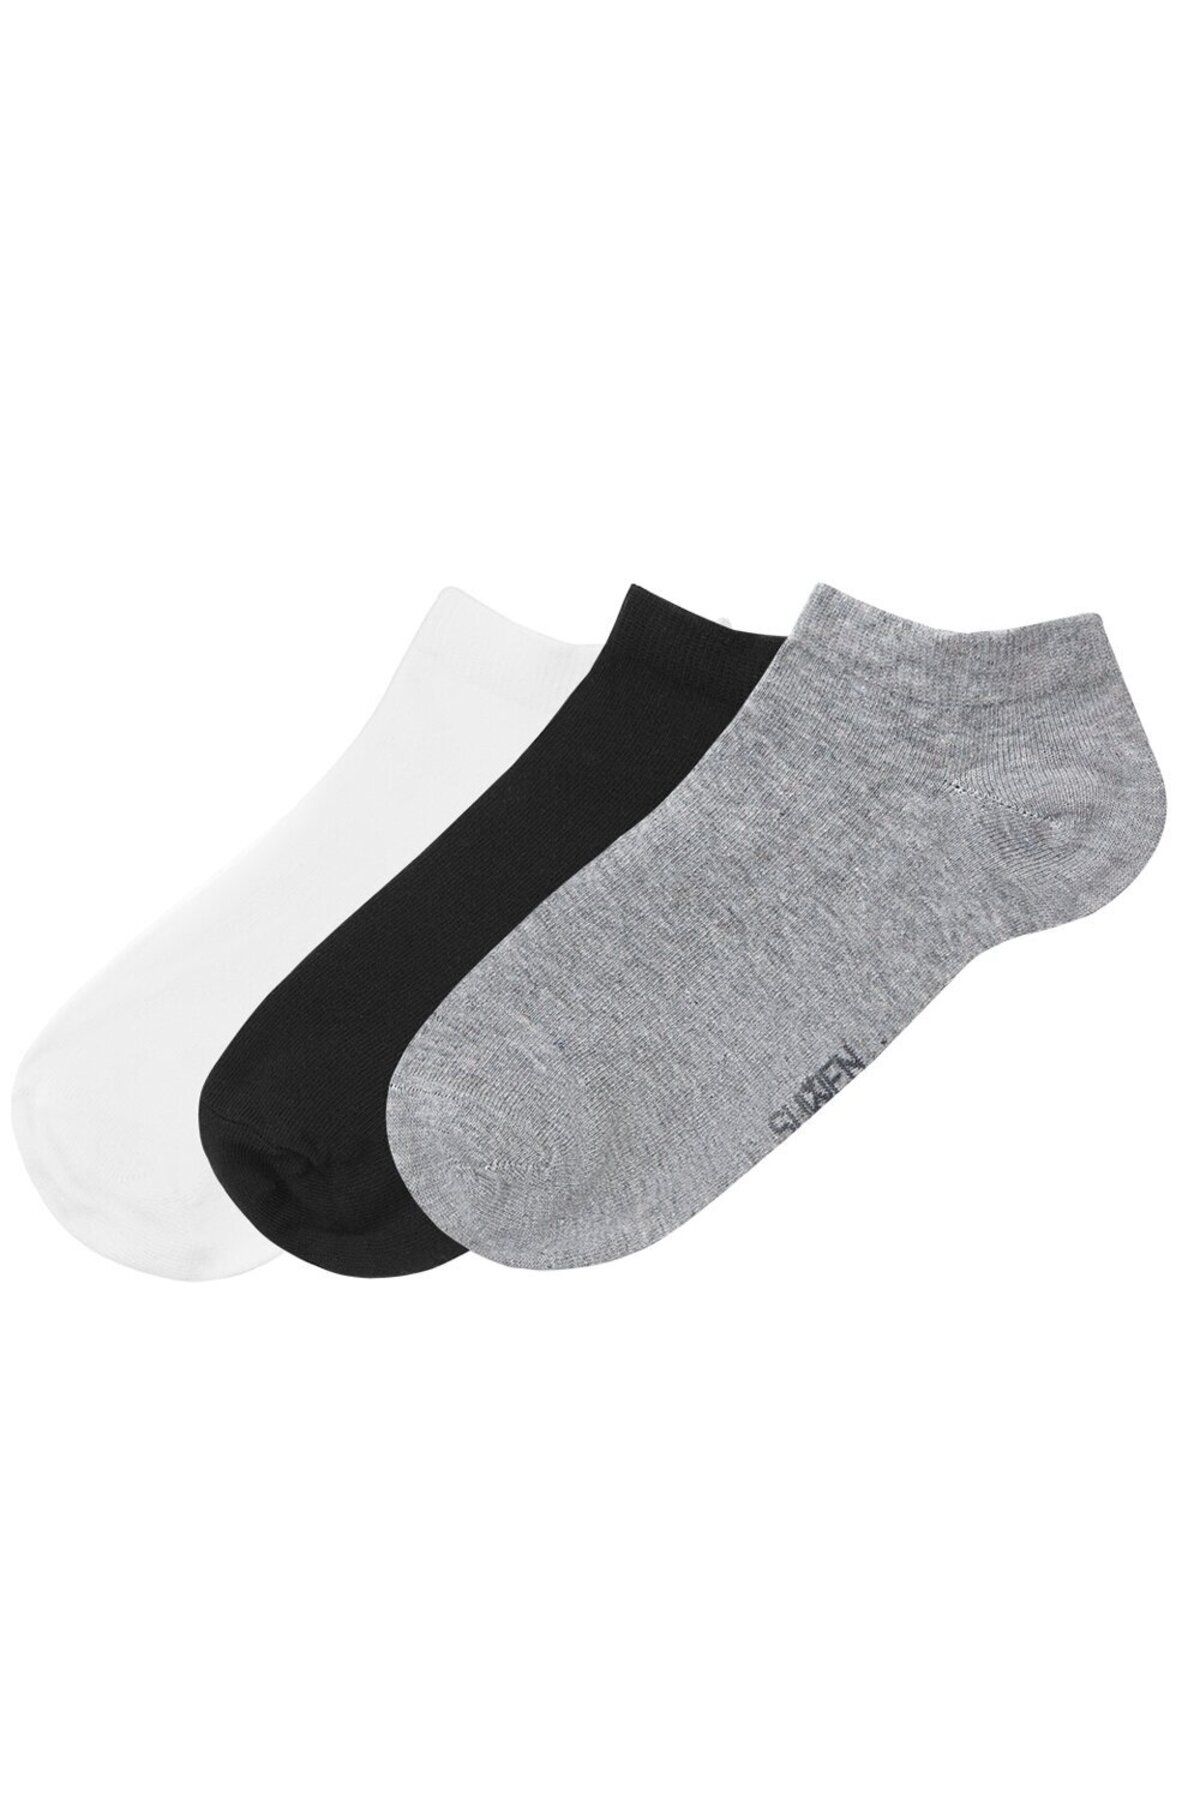 Suwen Erkek Basic 3 Lü Paket Çorap